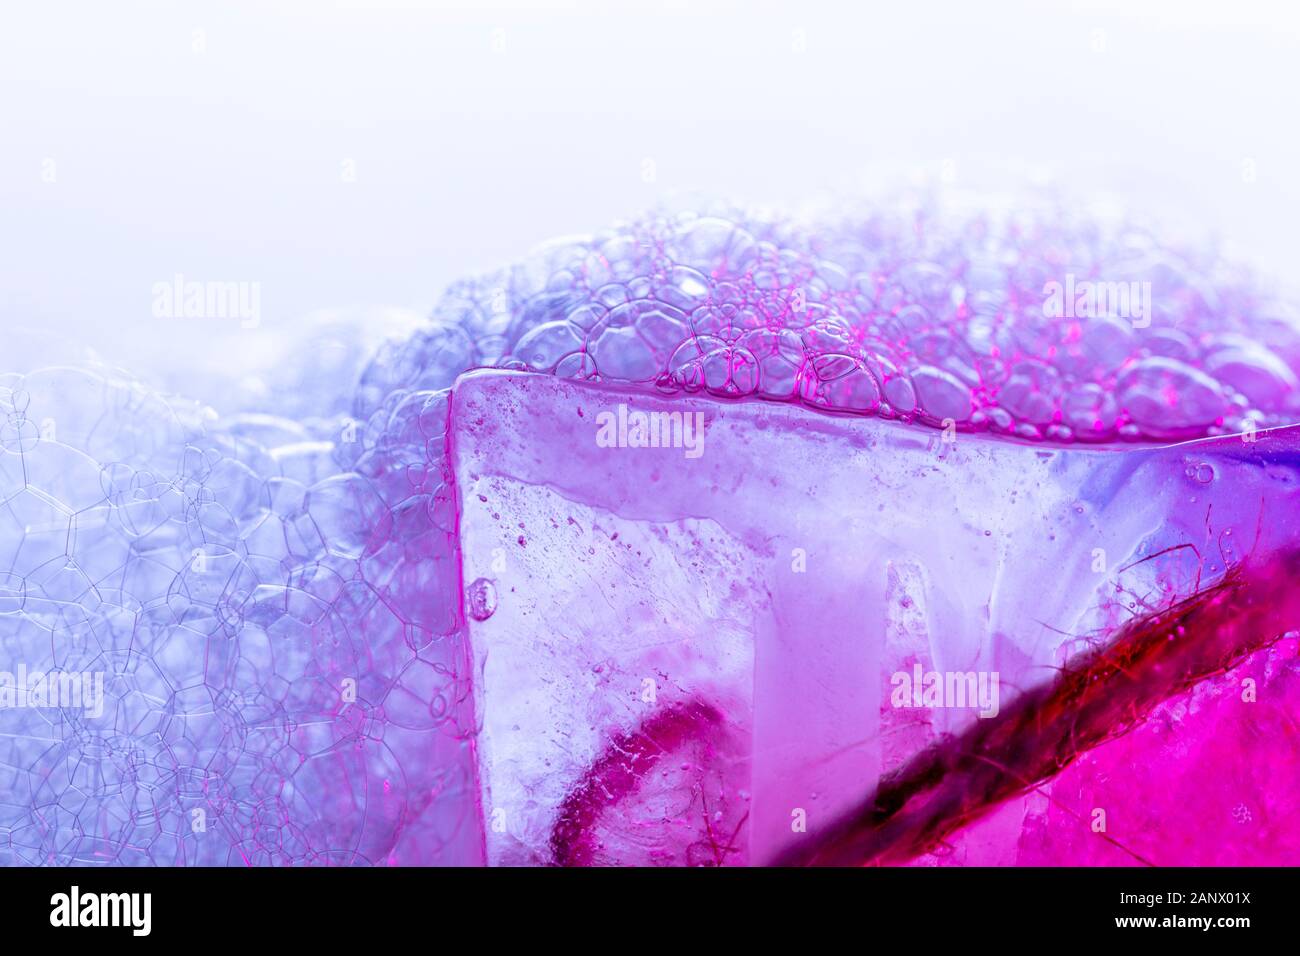 Kreative Zusammenfassung Hintergrund aus Kette von Bläschen und Eisoberfläche in Vivid Magenta Töne Stockfoto